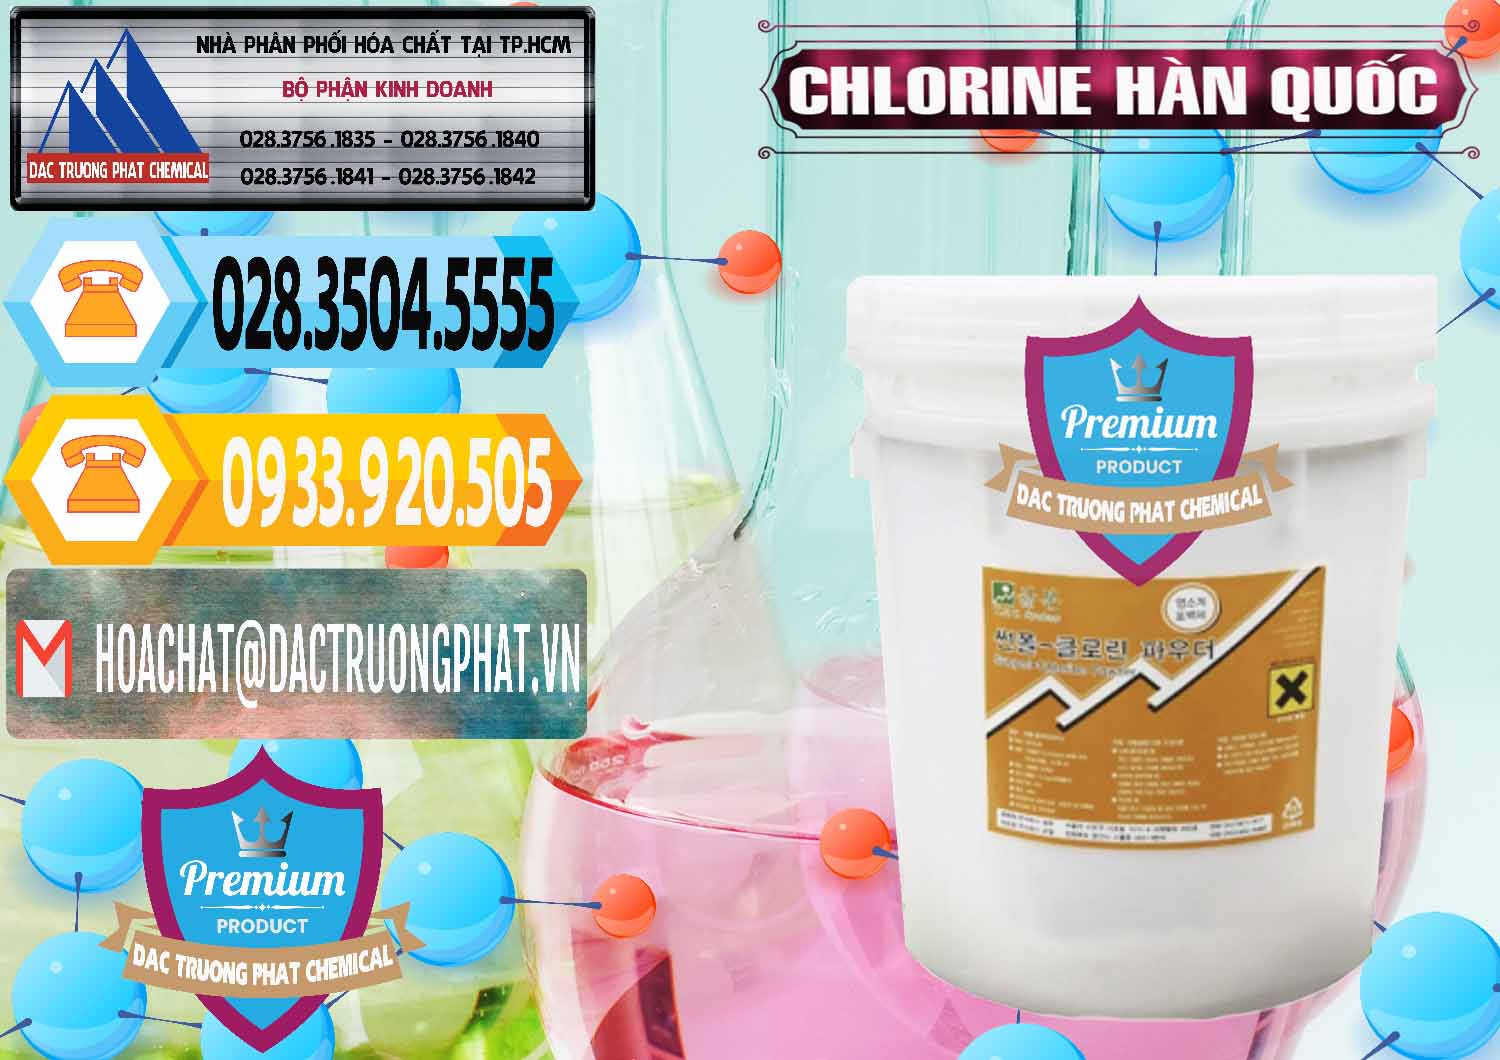 Cty chuyên kinh doanh _ bán Chlorine – Clorin 70% Hàn Quốc Korea - 0345 - Phân phối _ cung cấp hóa chất tại TP.HCM - hoachattayrua.net